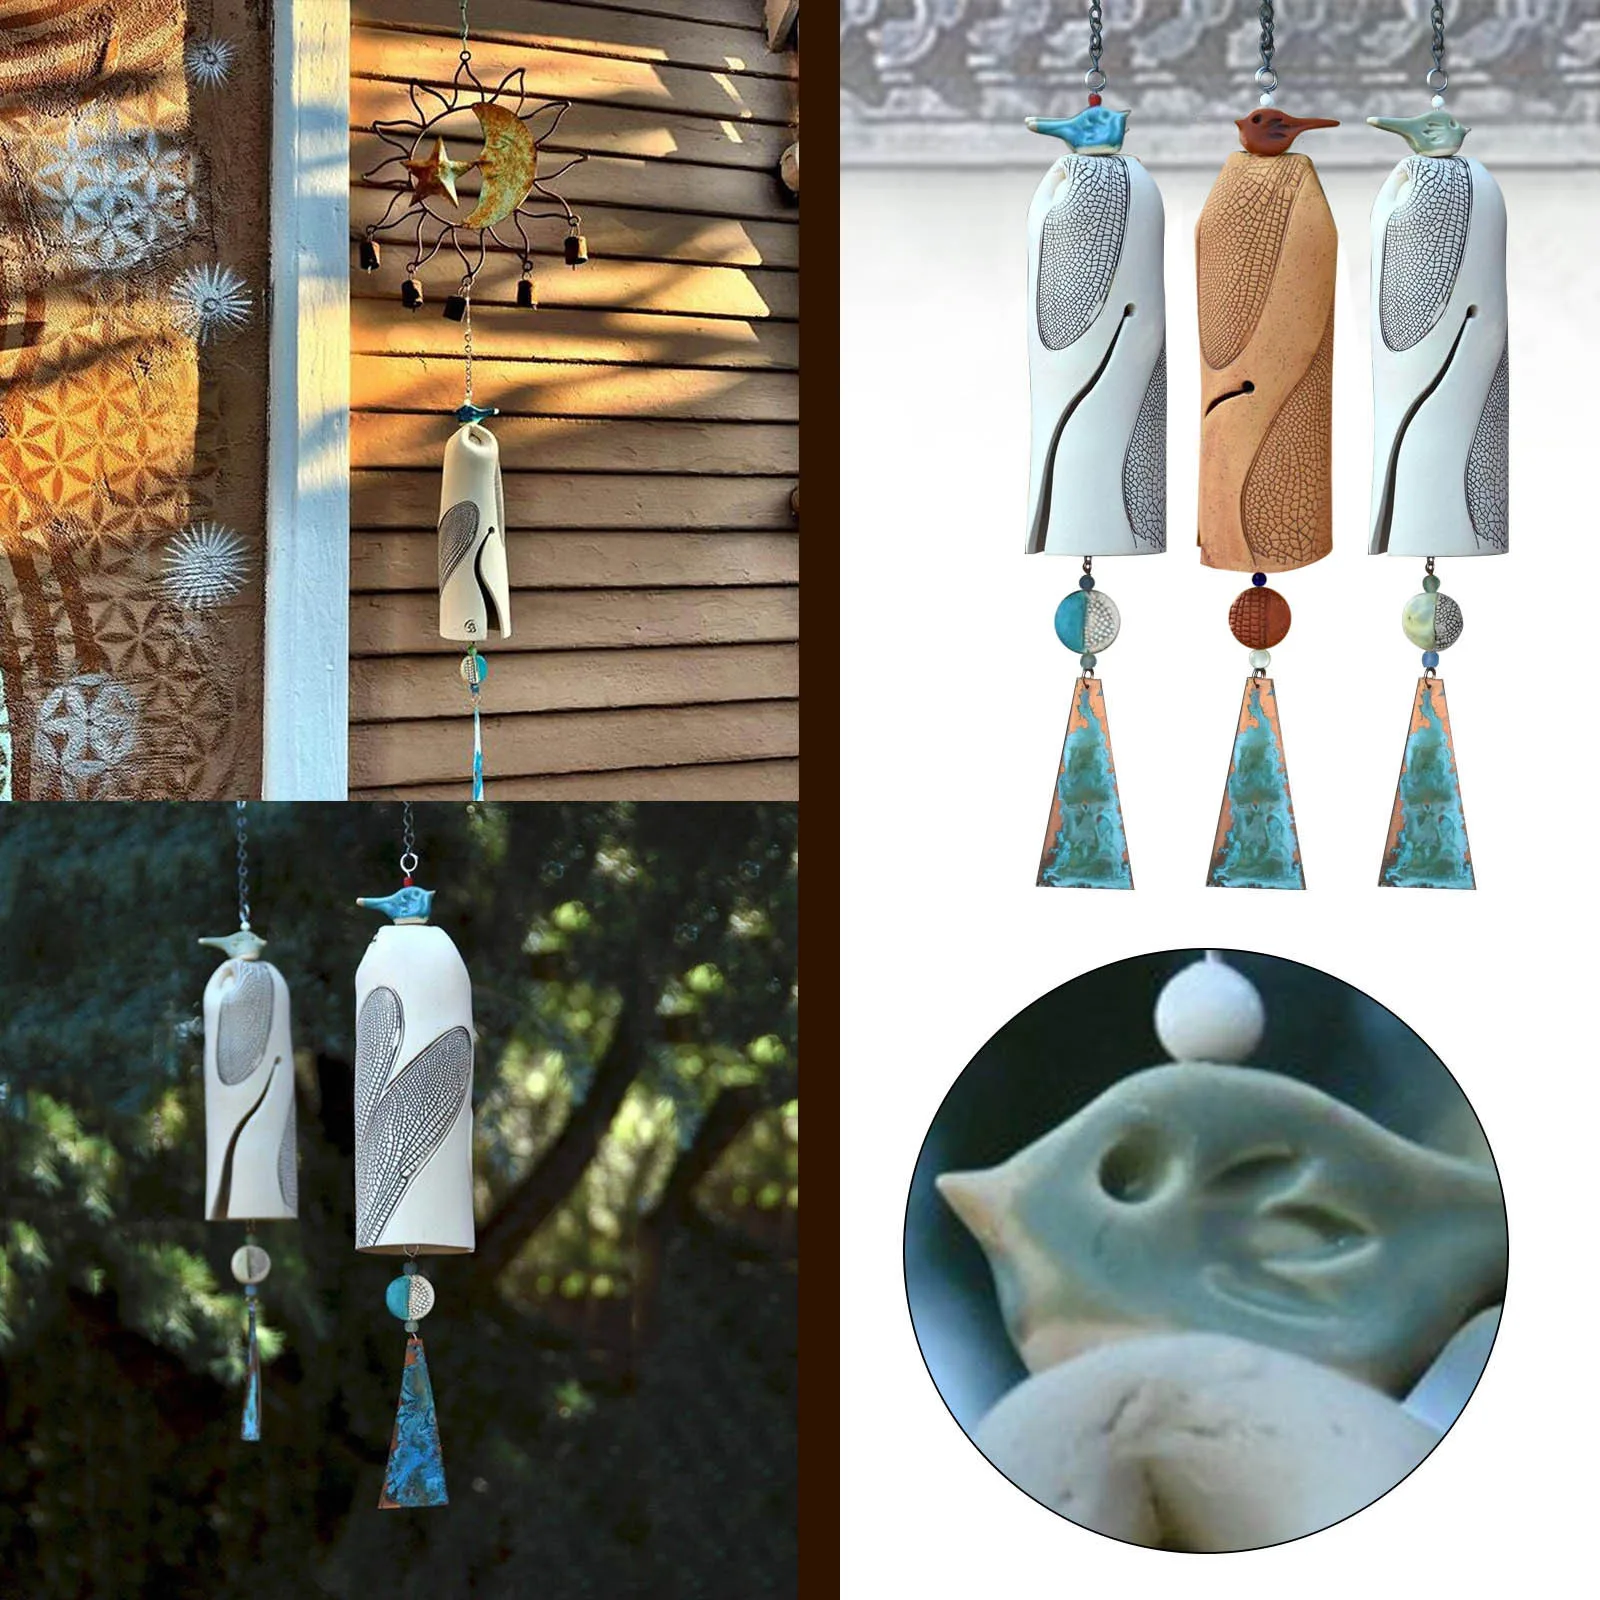 

Искусство абстрактные колокольчики со стрекозой-красивые ветряные колокольчики с стрекозой в деревенском стиле, подарок ручной работы в с...